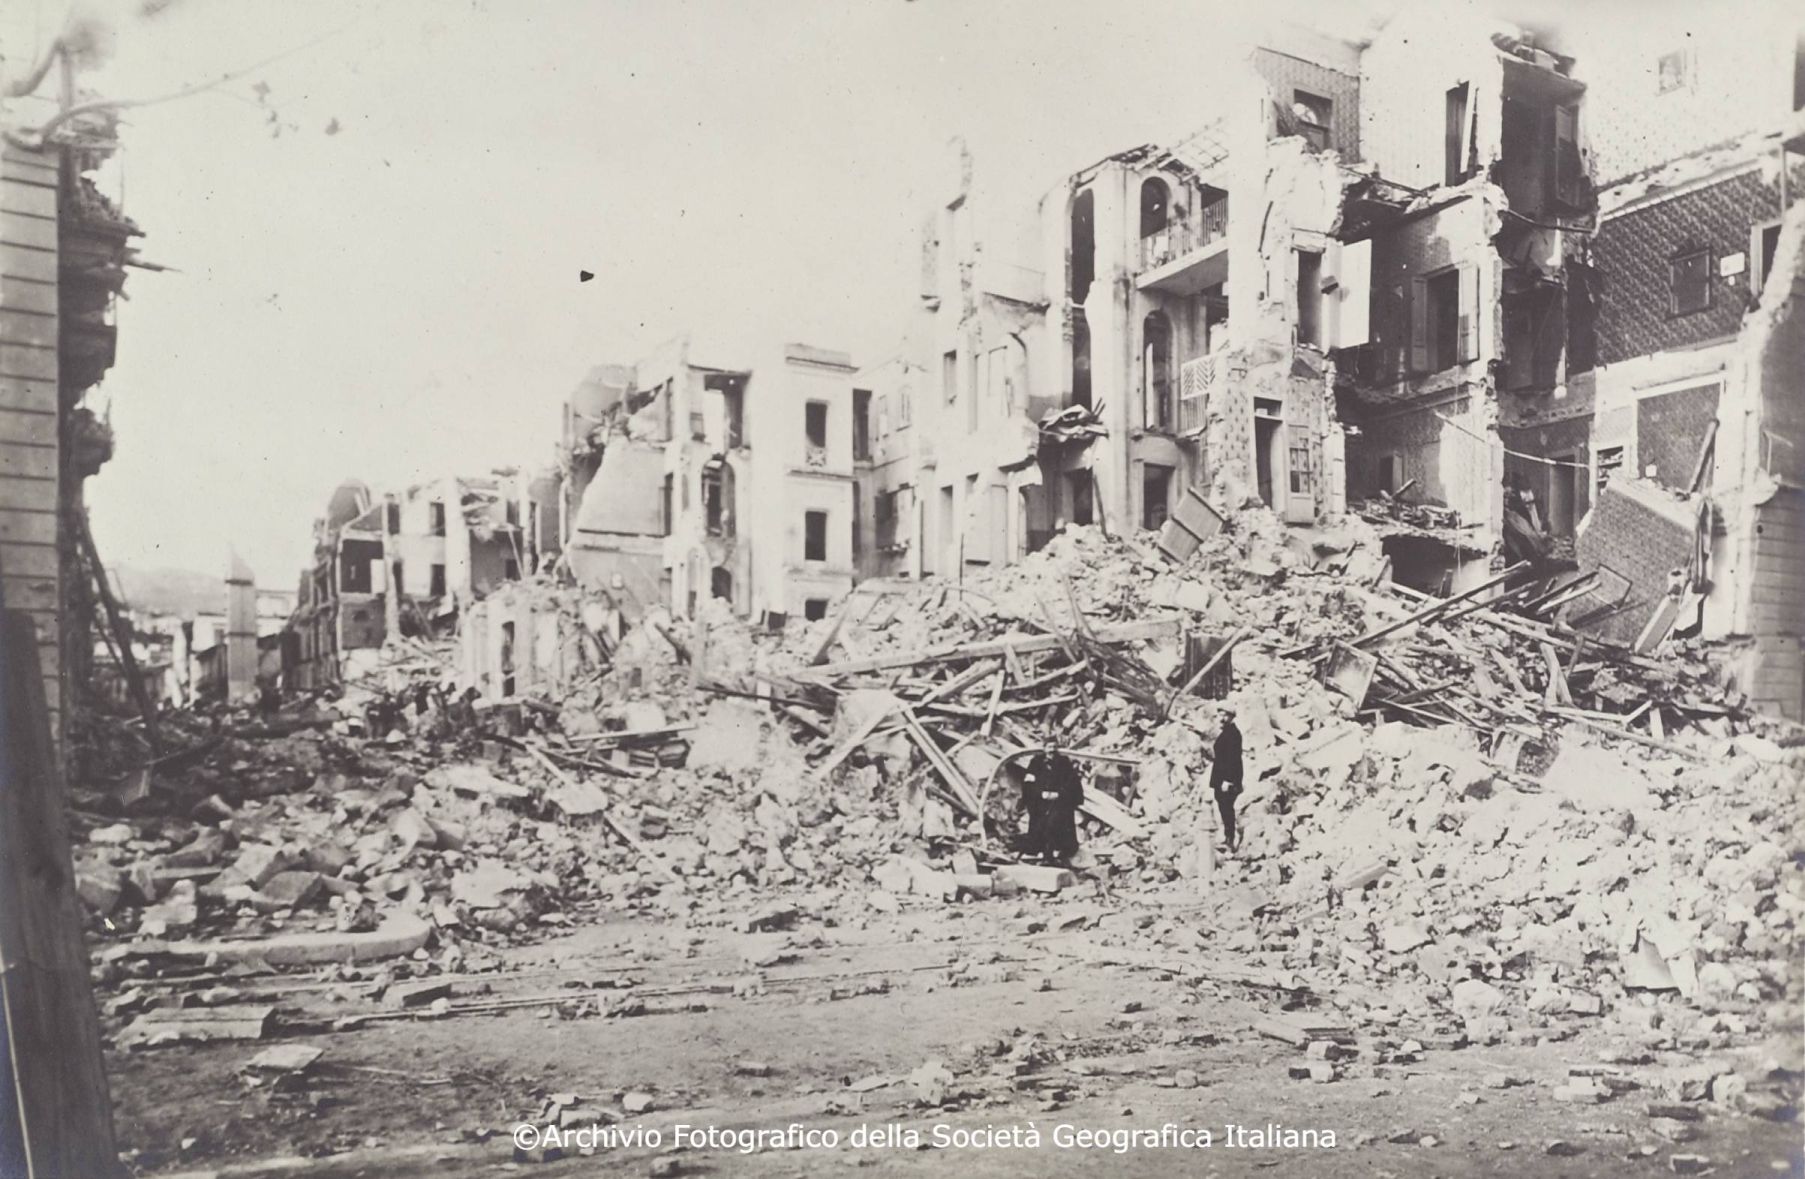 Il terremoto calabro-siculo del 28 dicembre 1908